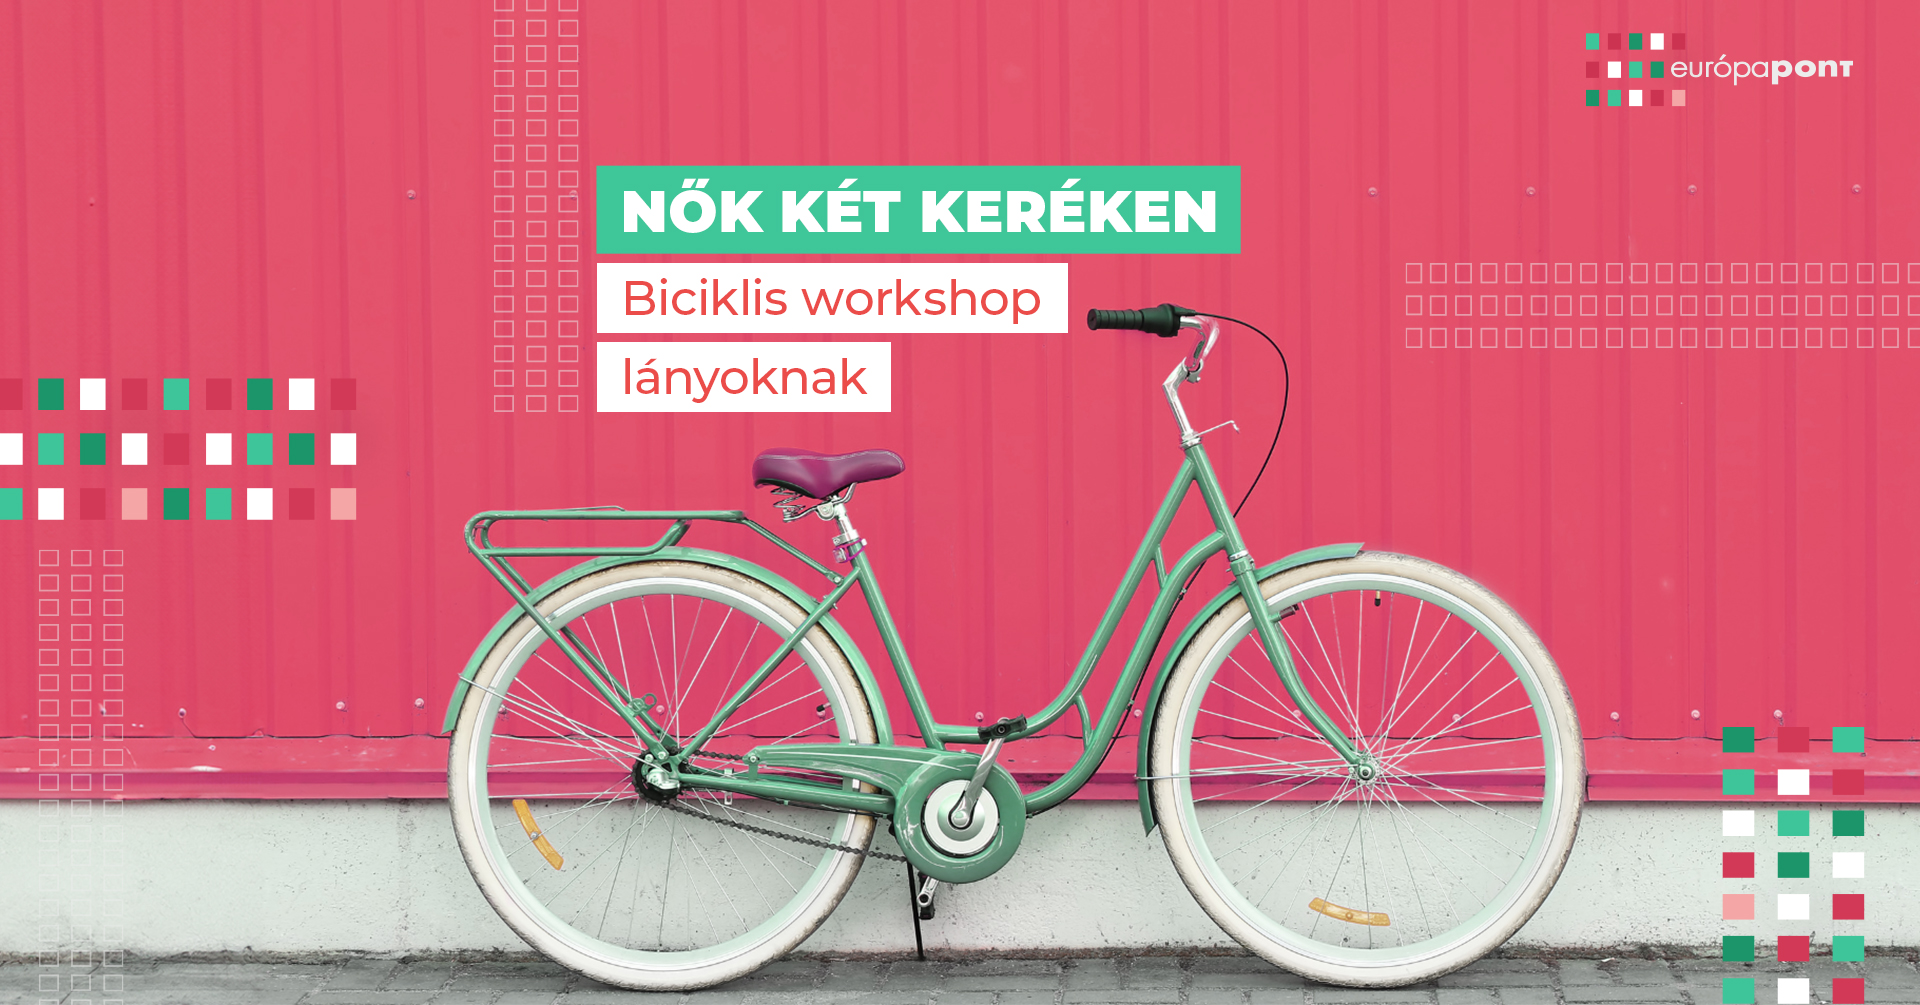 bicikli-workshop-cover-ep-v2.jpg